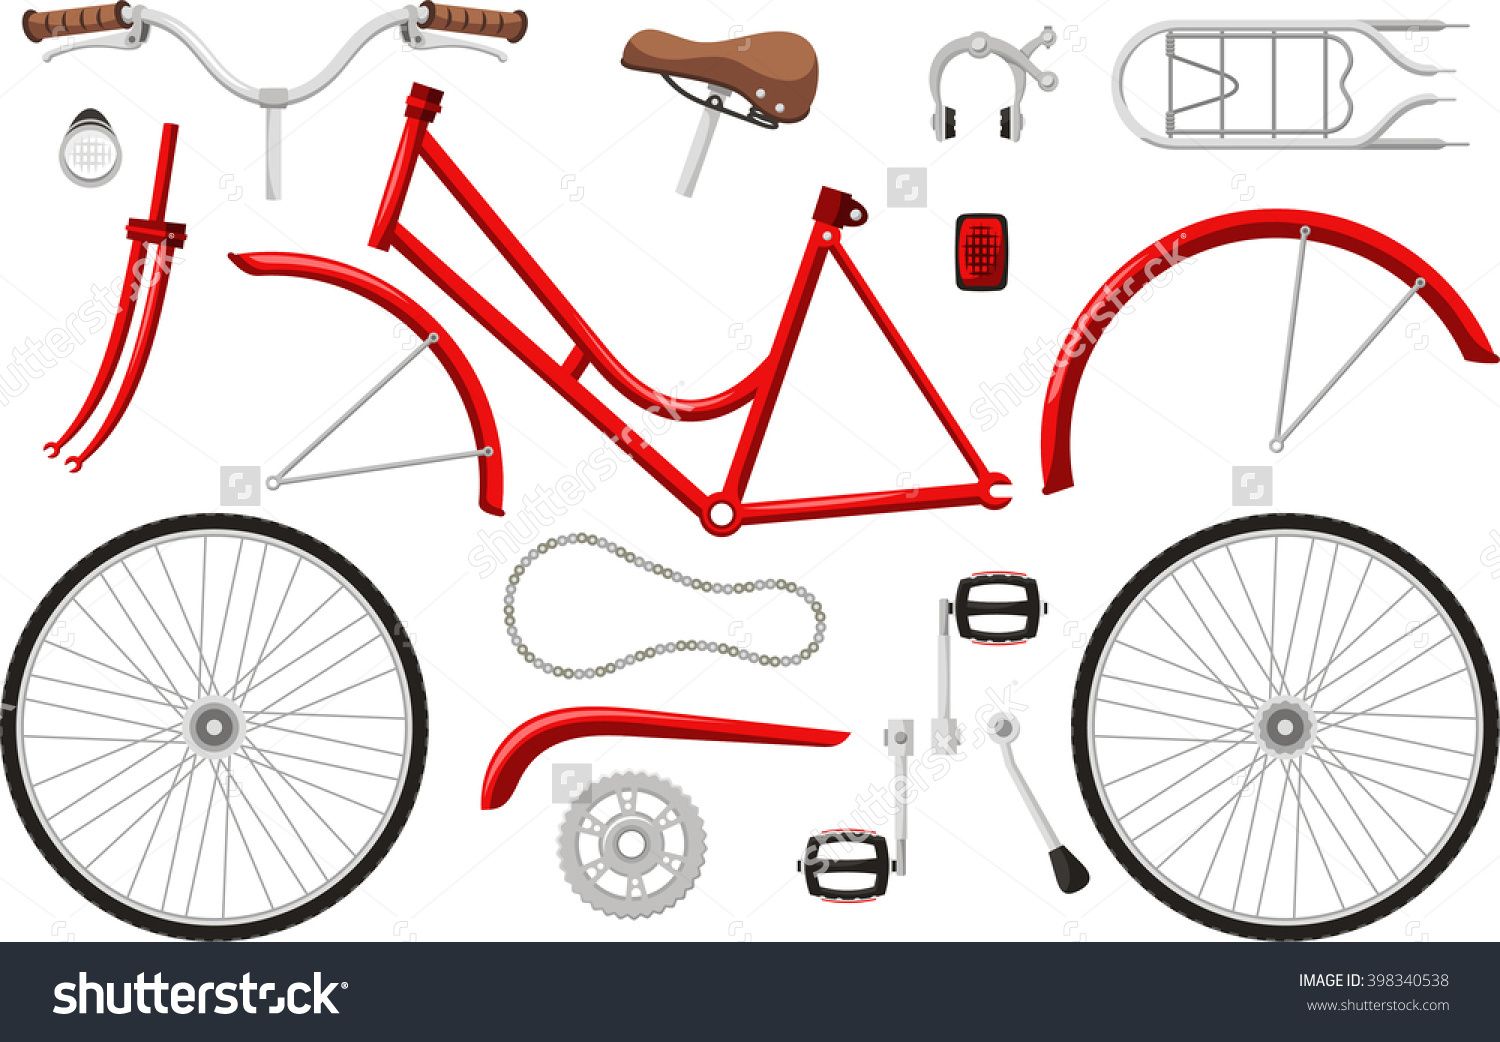 части велосипеда и их названия картинки